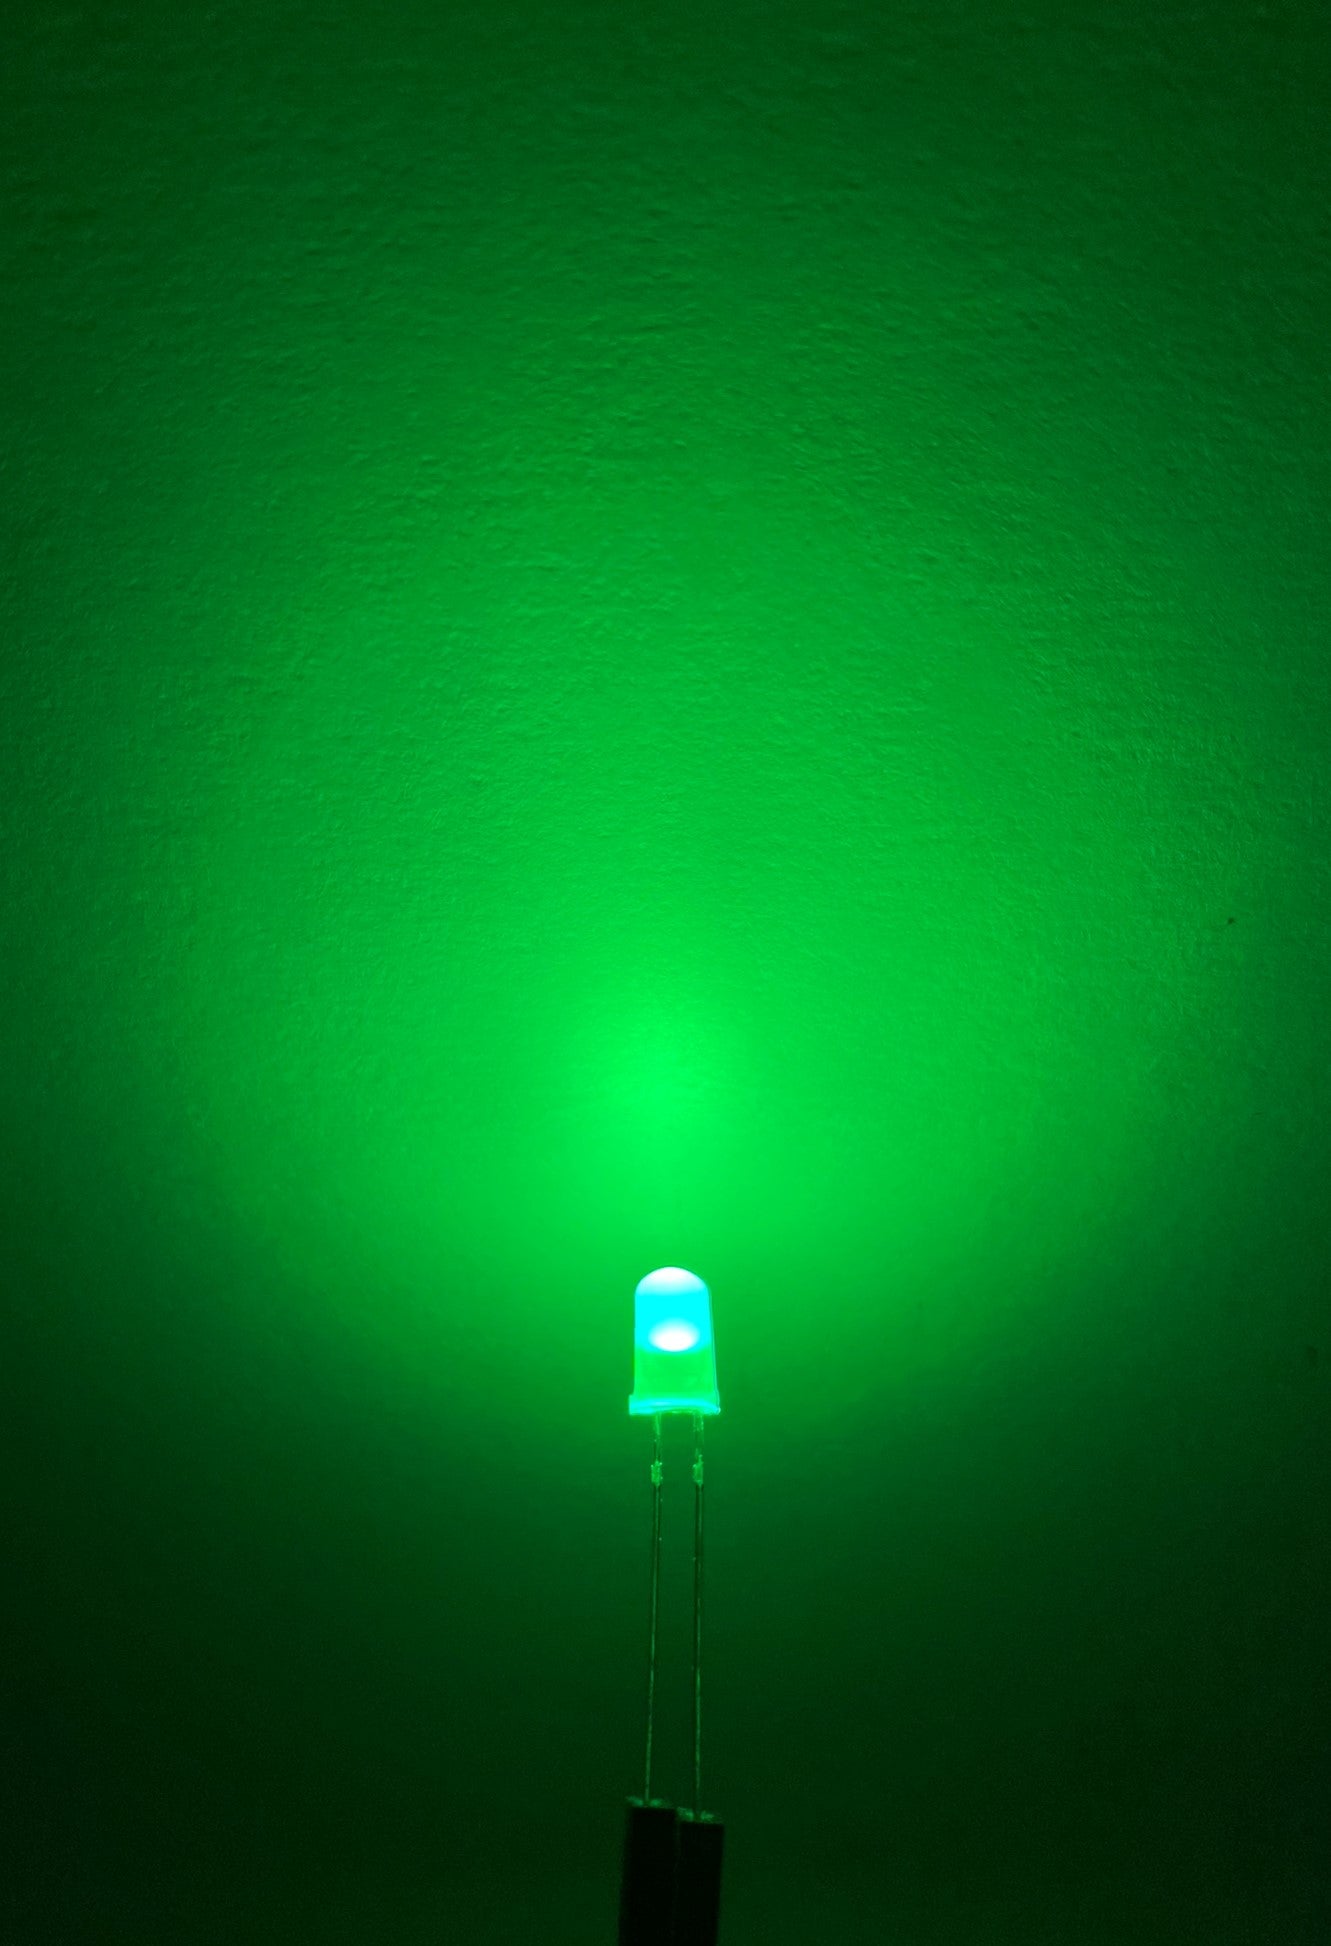 Diodo LED 5mm difuso | Diodo emisor de luz foggy